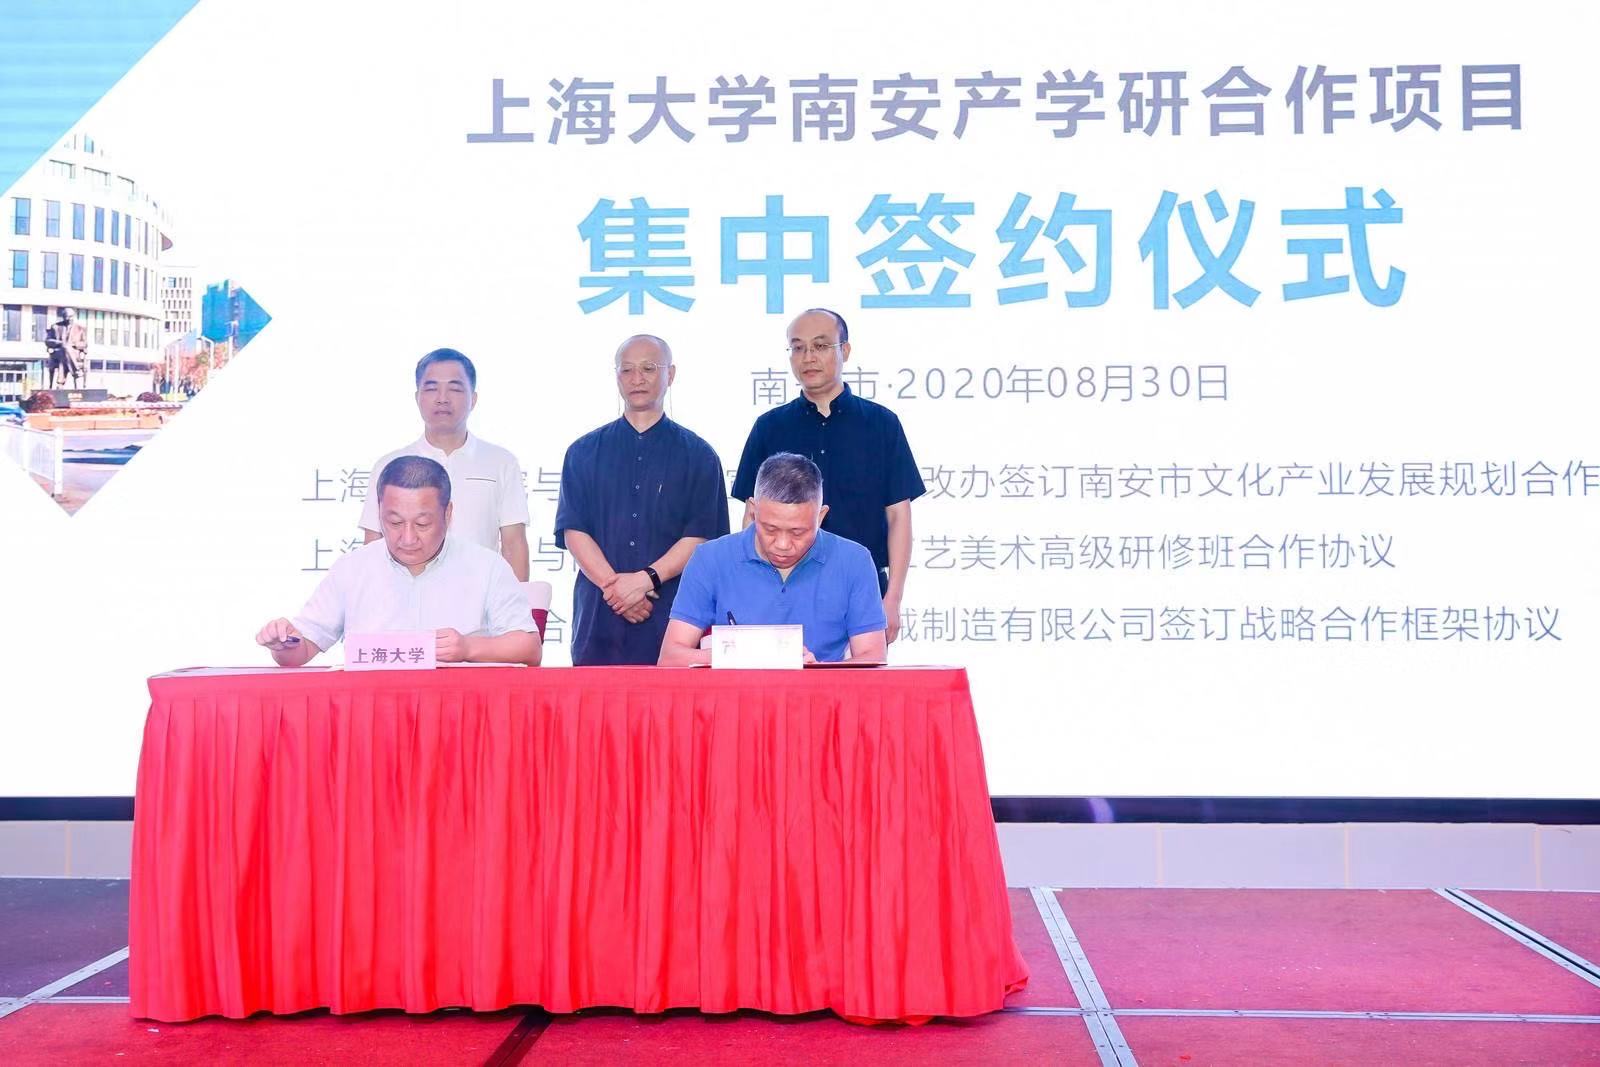 Тепло отмечаем подписание Соглашения о стратегическом сотрудничестве Шанхайского университета и SL Machinery и церемонию открытия научно-исследовательского центра передового оборудования для защиты окружающей среды.